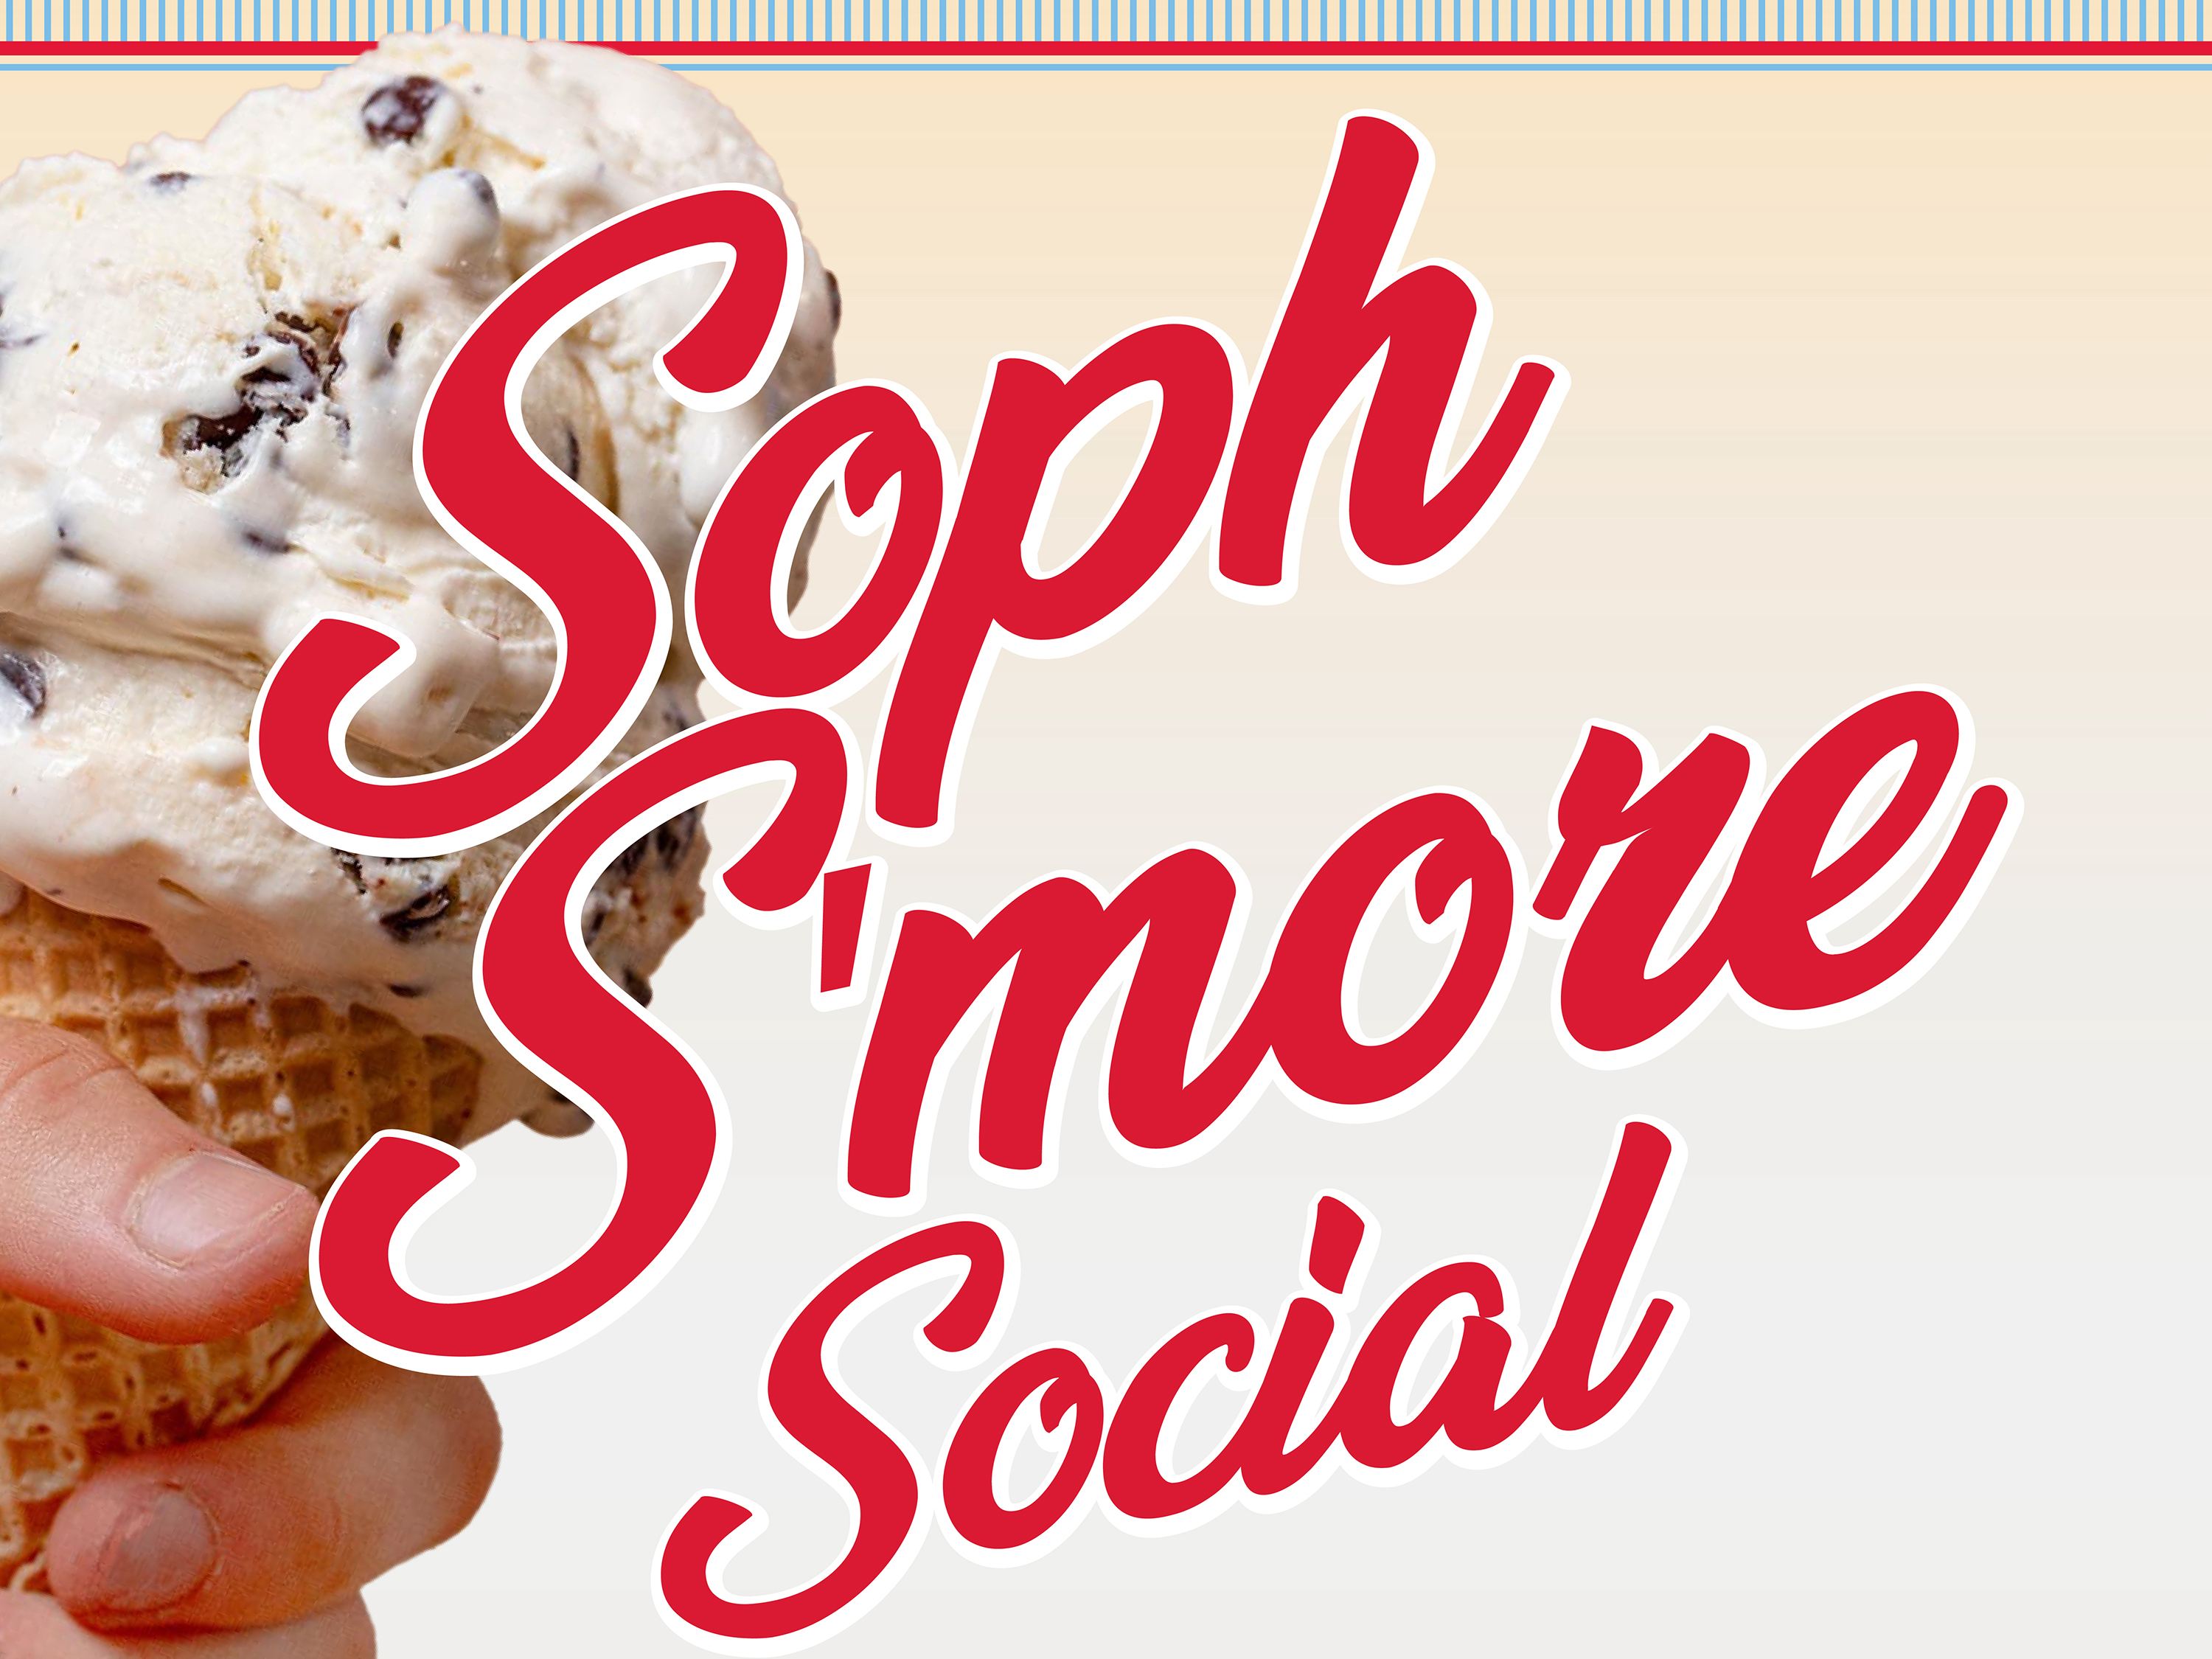 Soph S'more Social